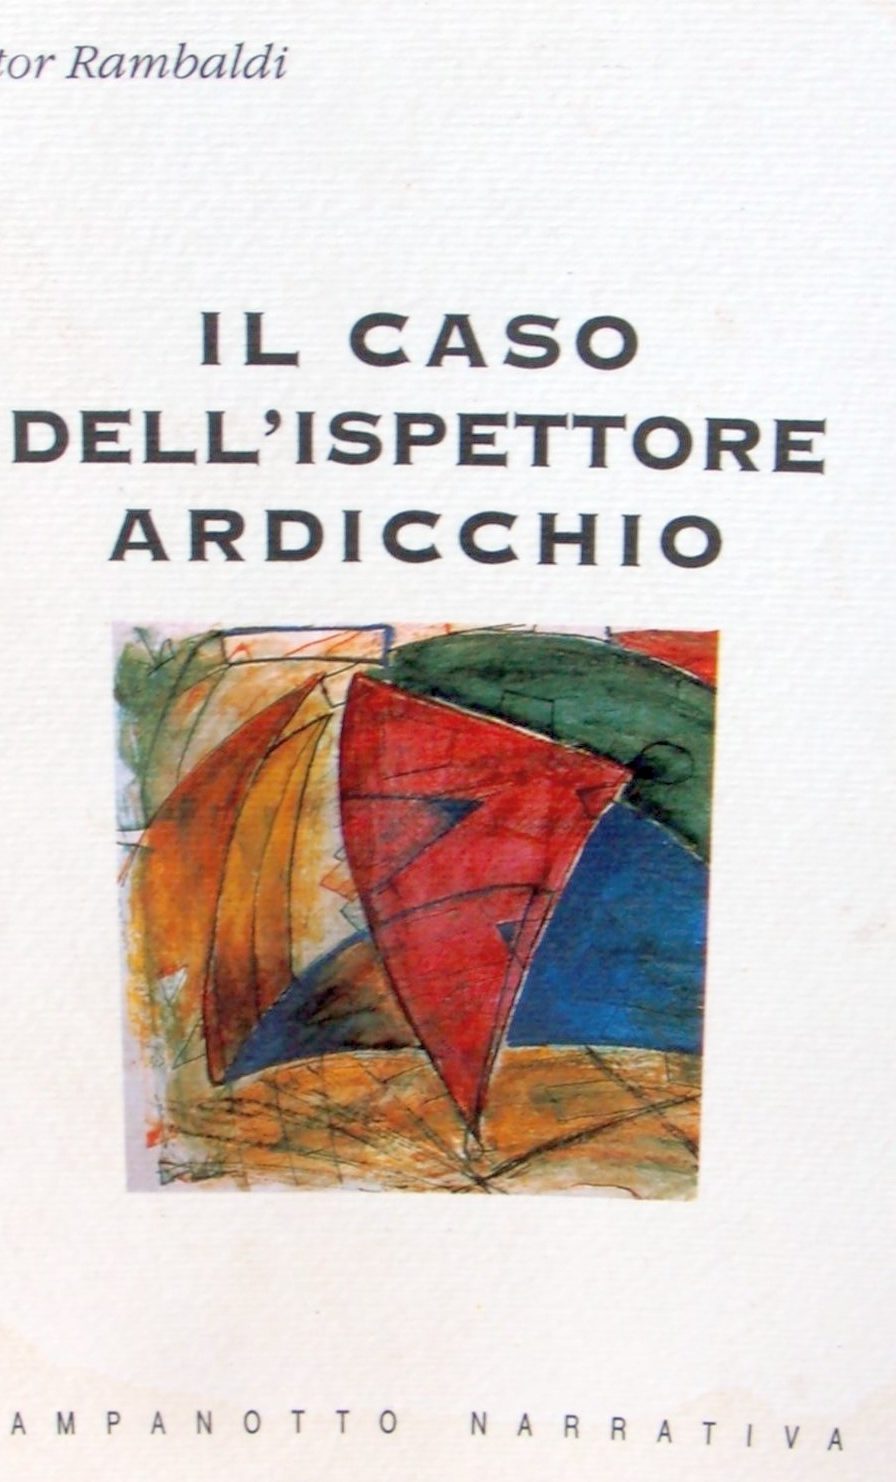 (2002) Il caso dell'ispettore Ardicchio